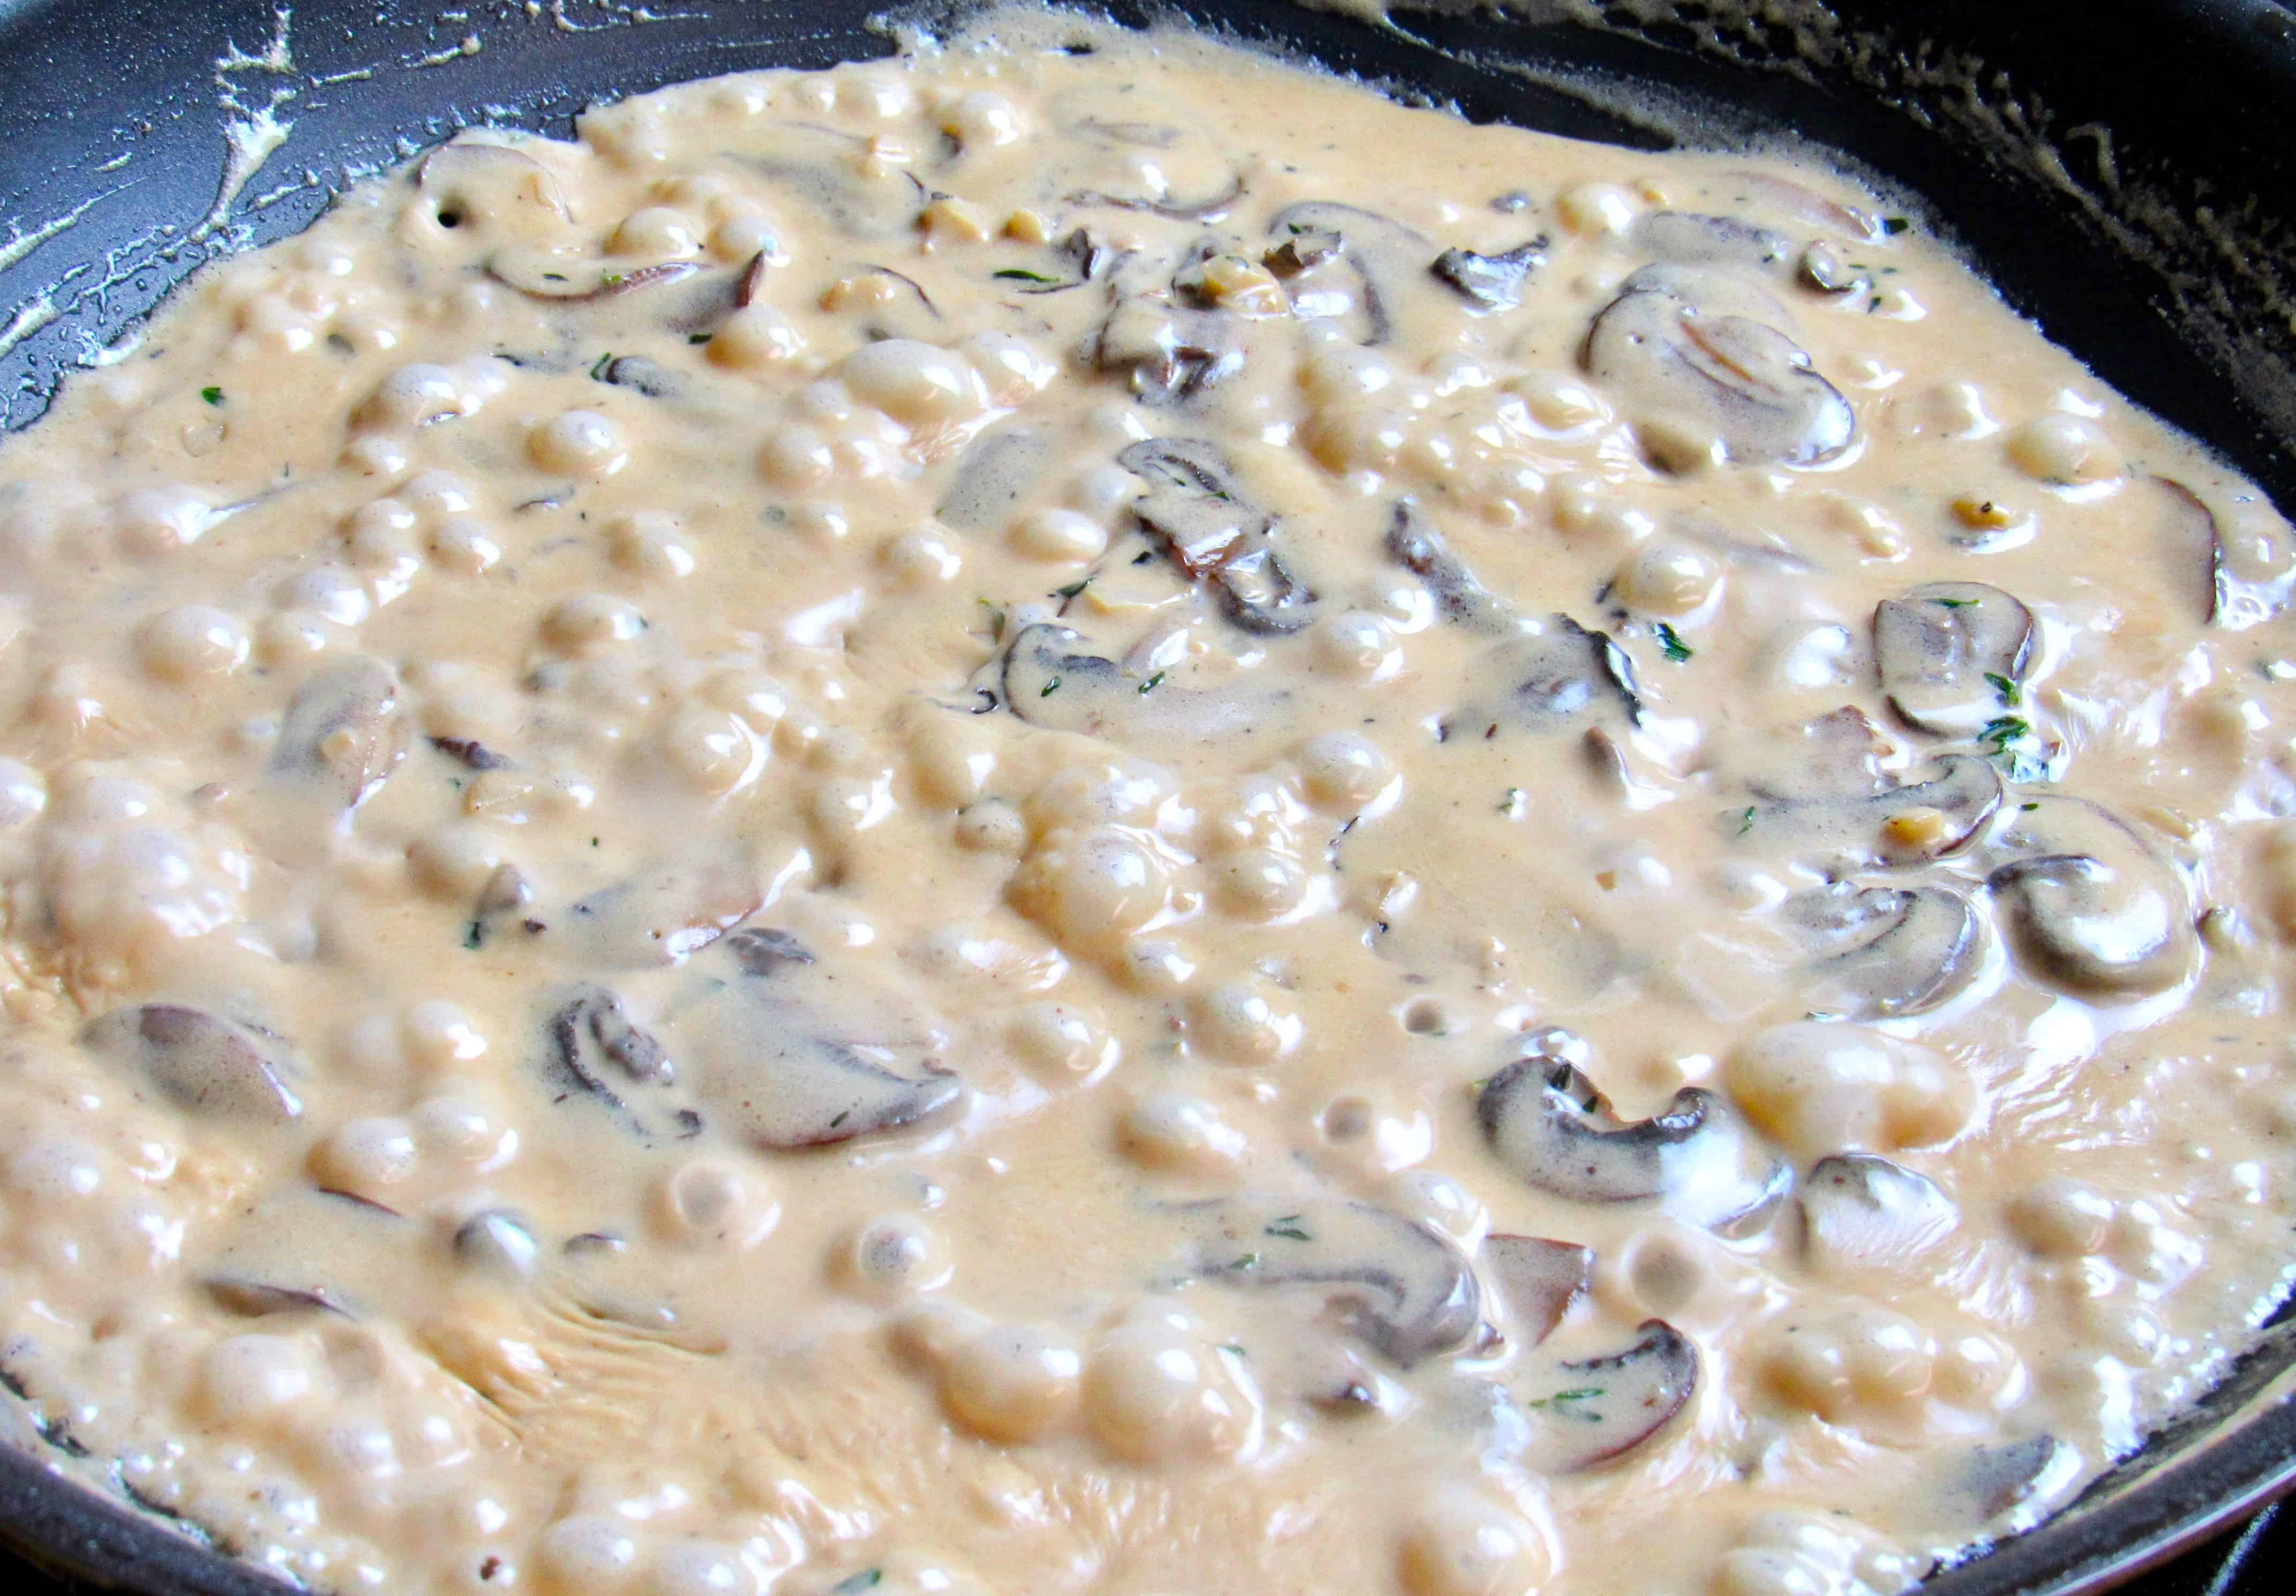 mushroom gravy cooking in skillet